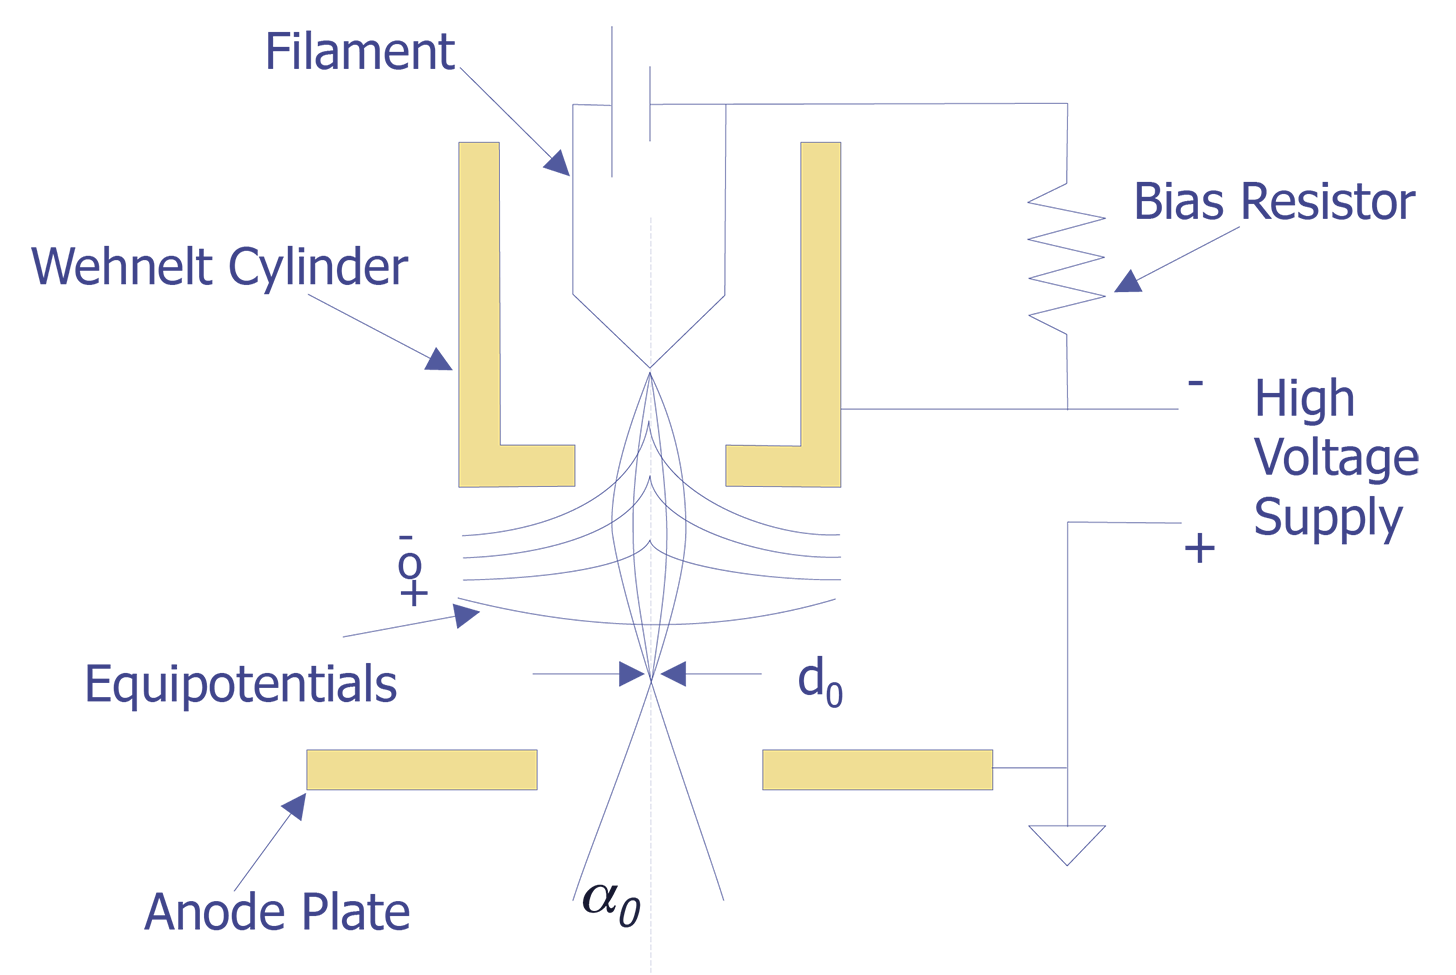 microscope clipart microscope diagram